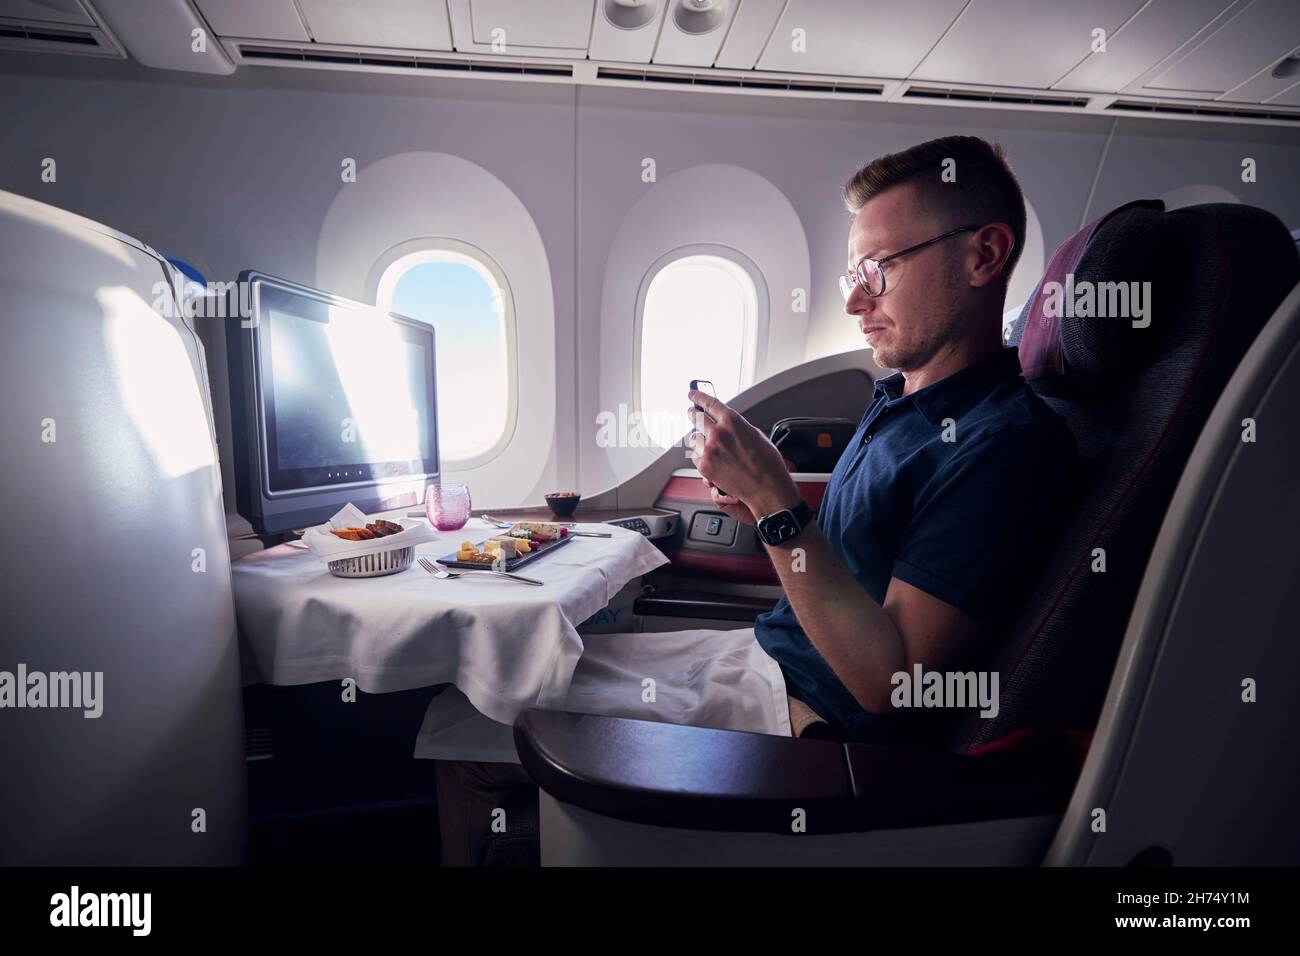 PRAGA, REPUBBLICA CECA - 2 SETTEMBRE 2021: Passeggeri che scattano foto del cibo durante il volo in business class in Qatar Airways Boeing 787-8 Dreamliner. Foto Stock